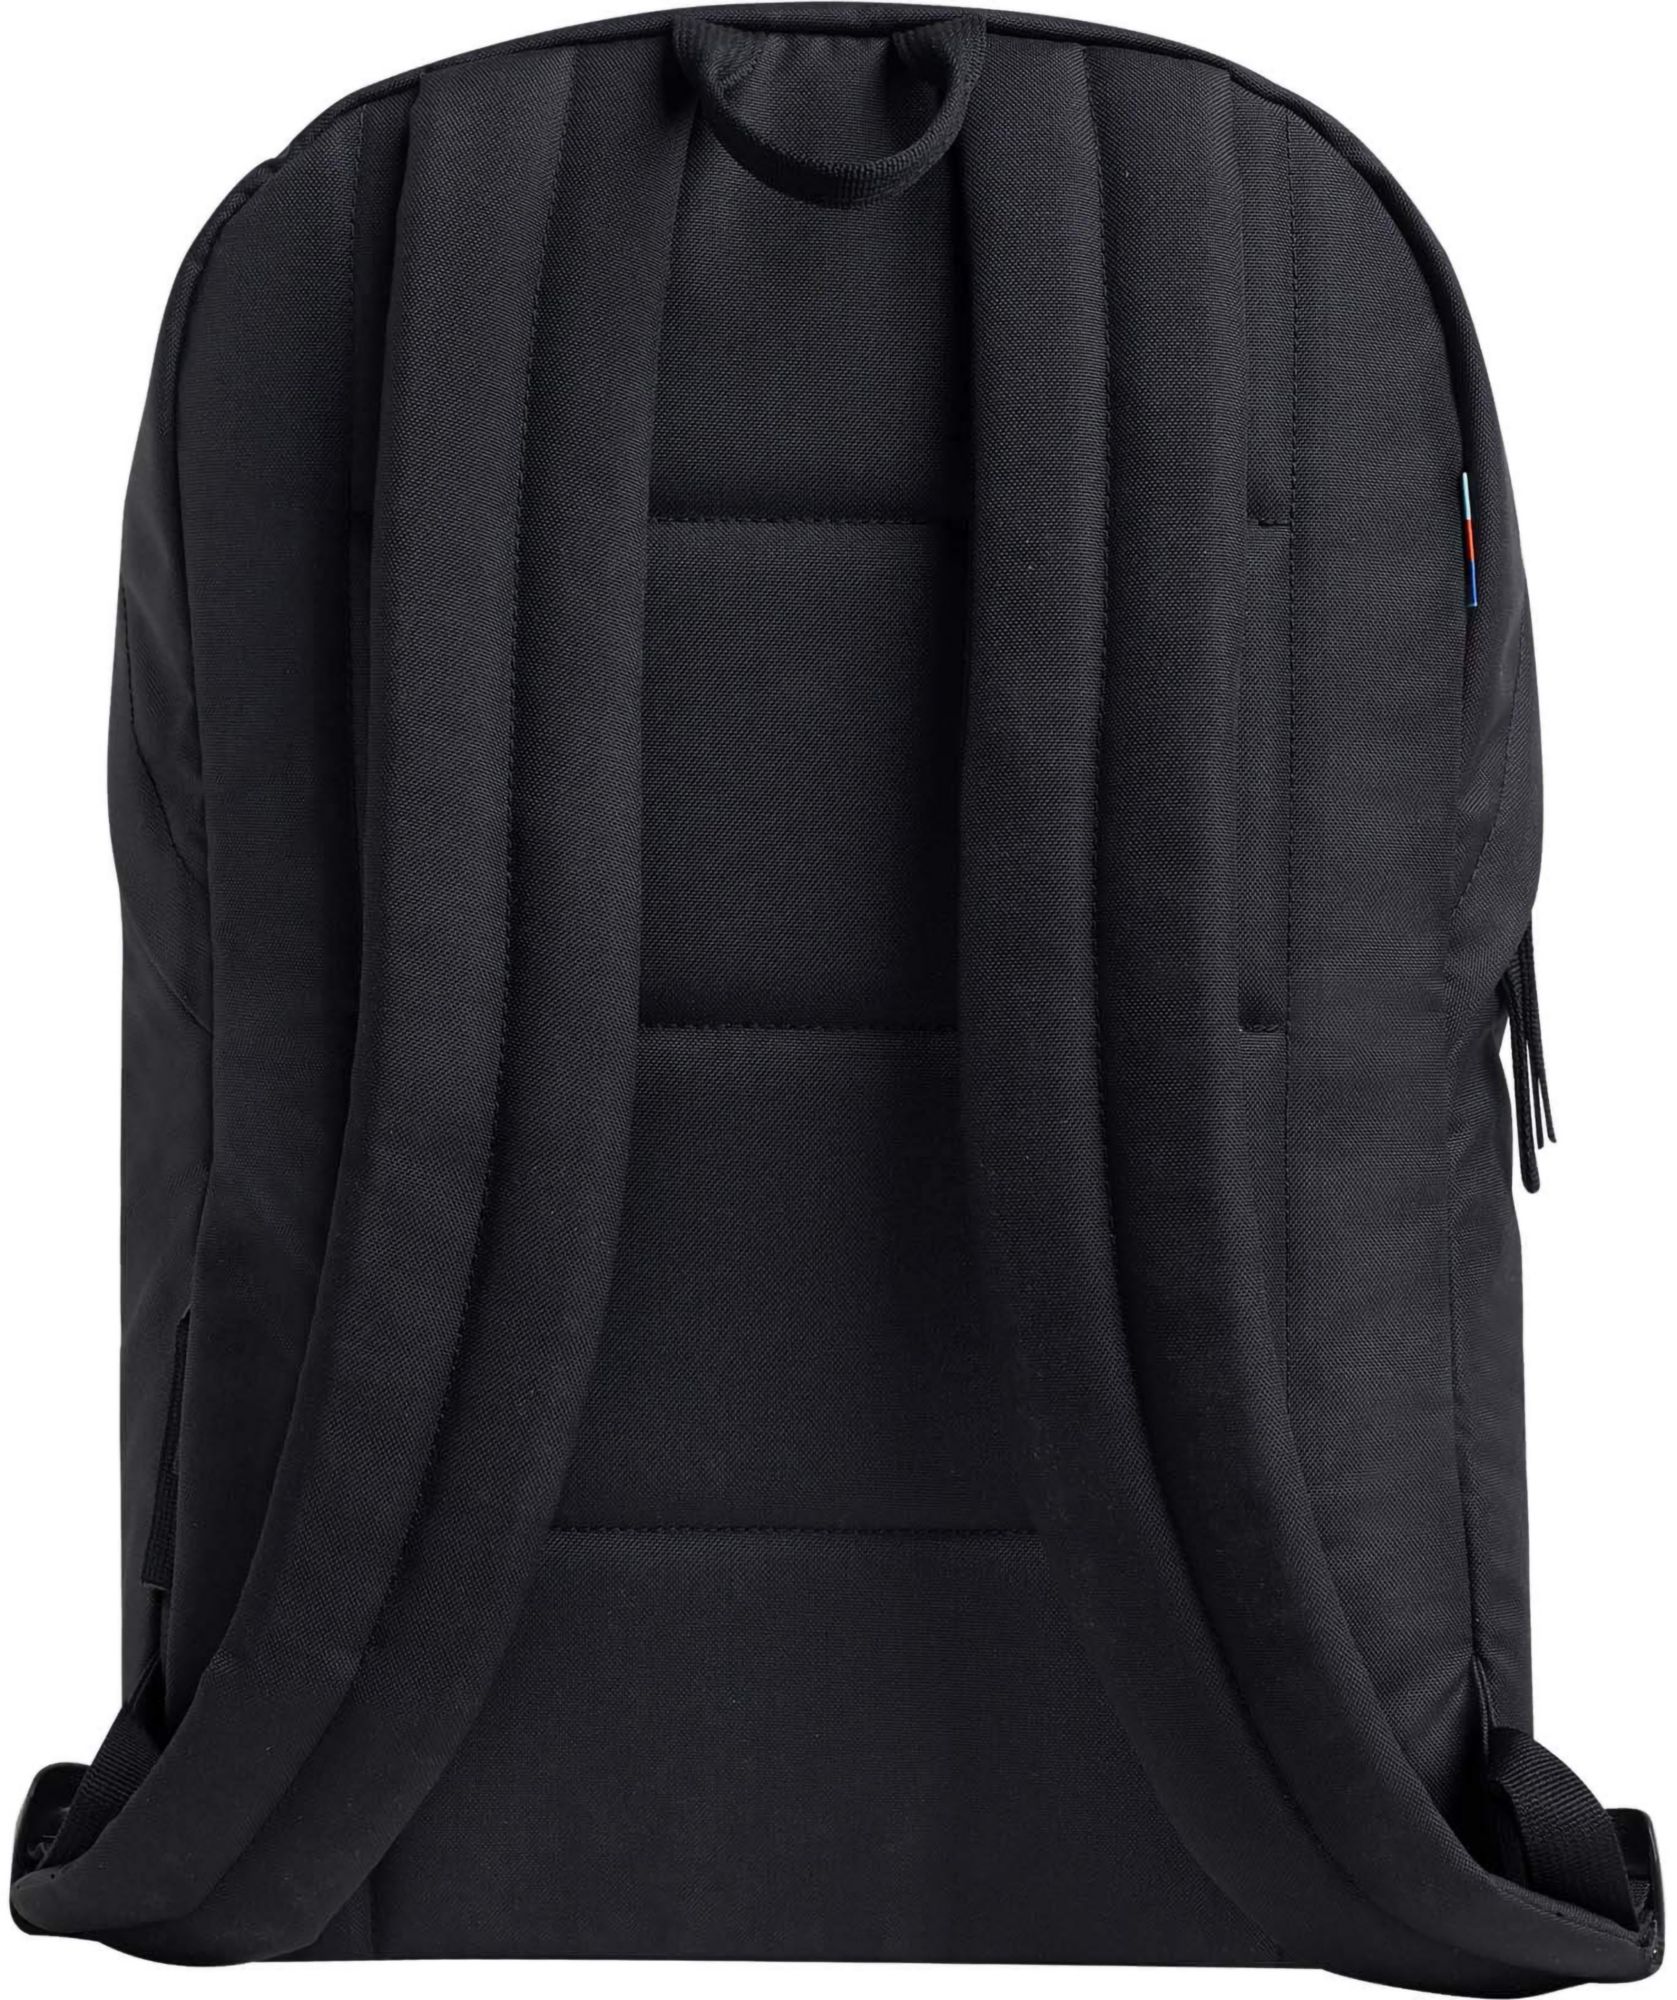 GOT BAG Easy Pack Zip 17L Backpack